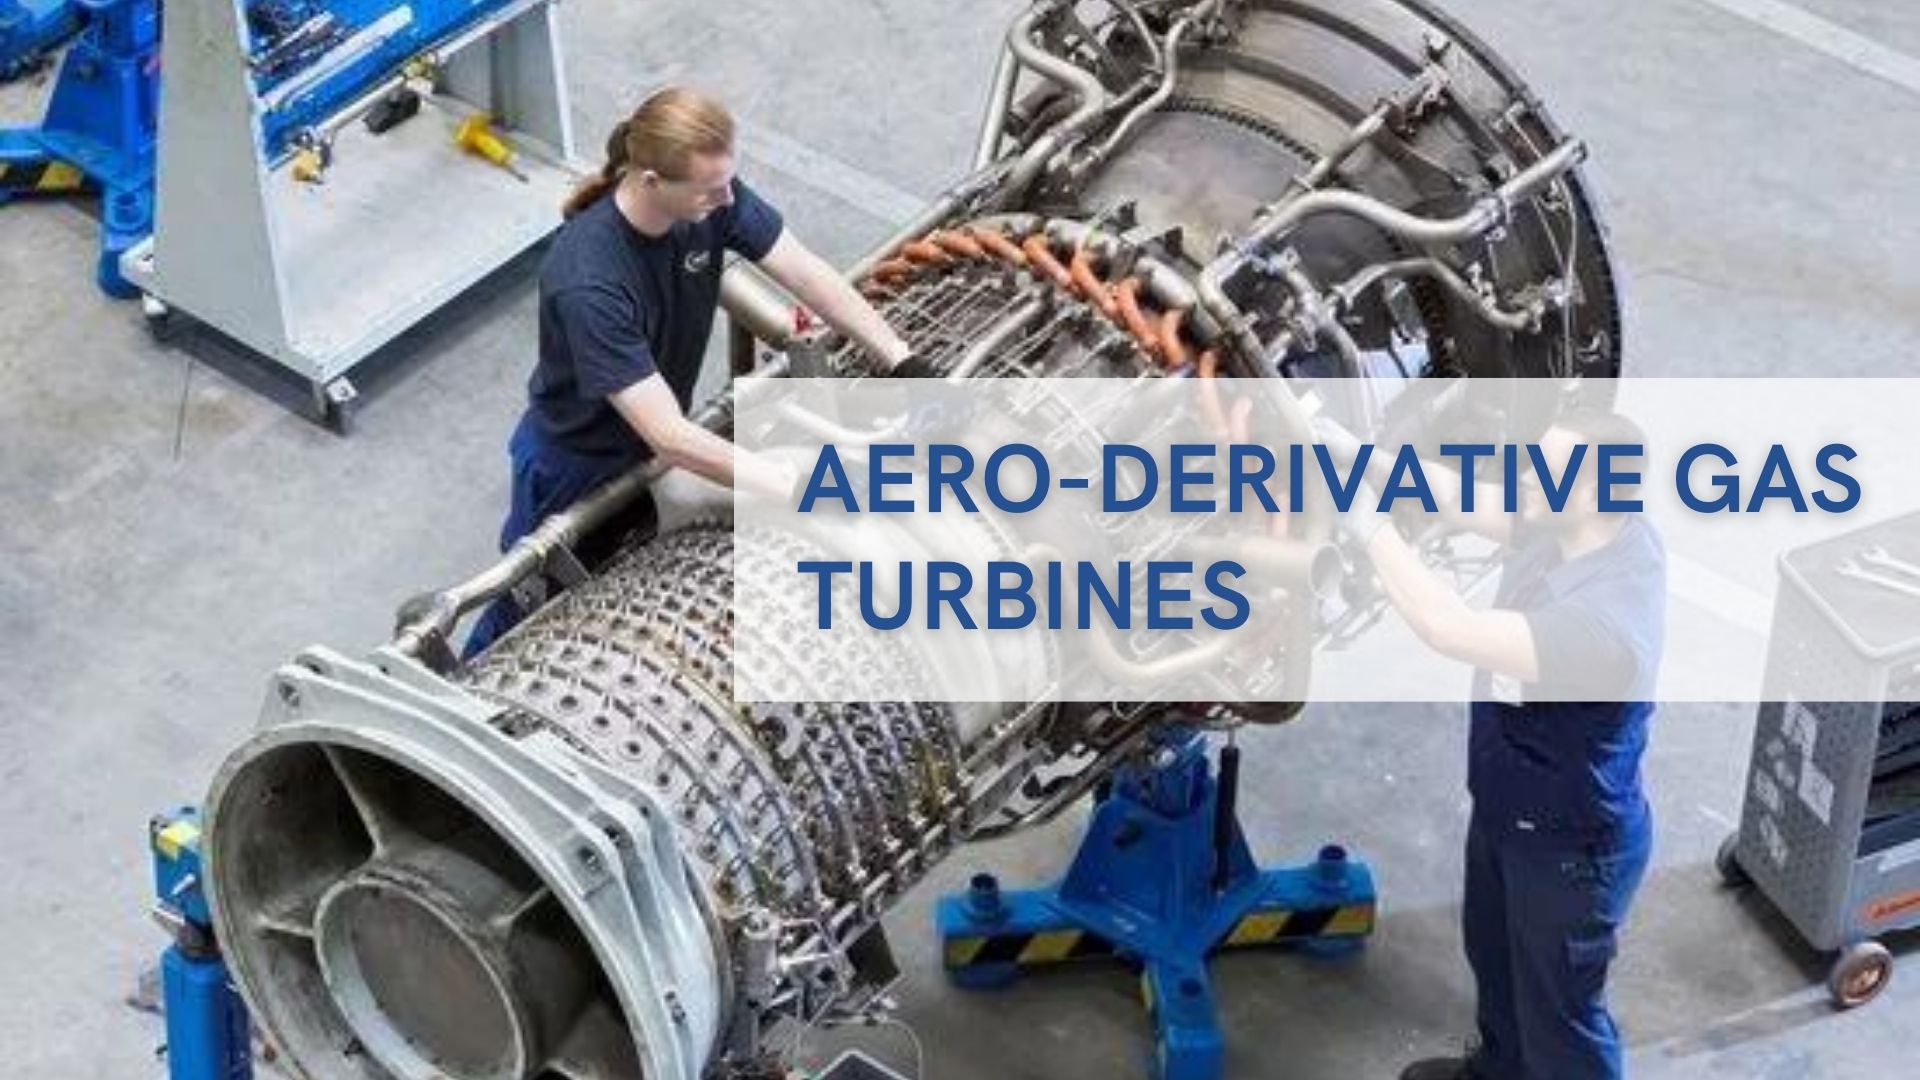 Aero-derivative Gas turbines